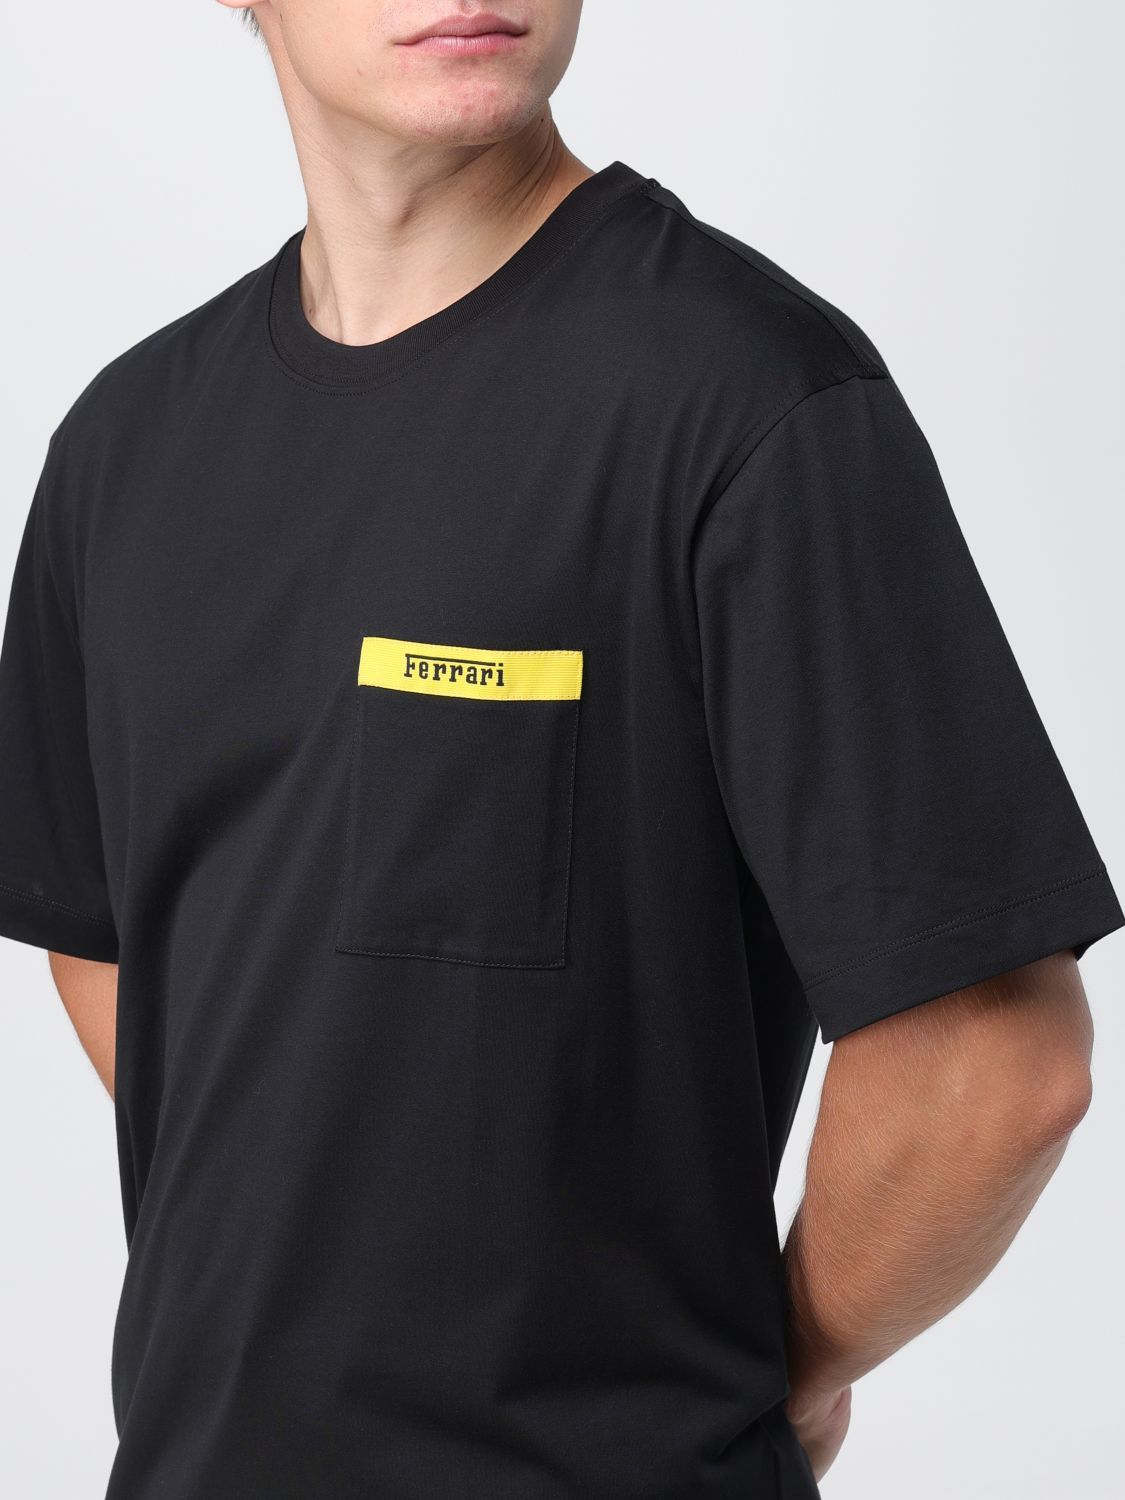 FERRARI: Camiseta para hombre, Negro  Camiseta Ferrari 47825 en línea en